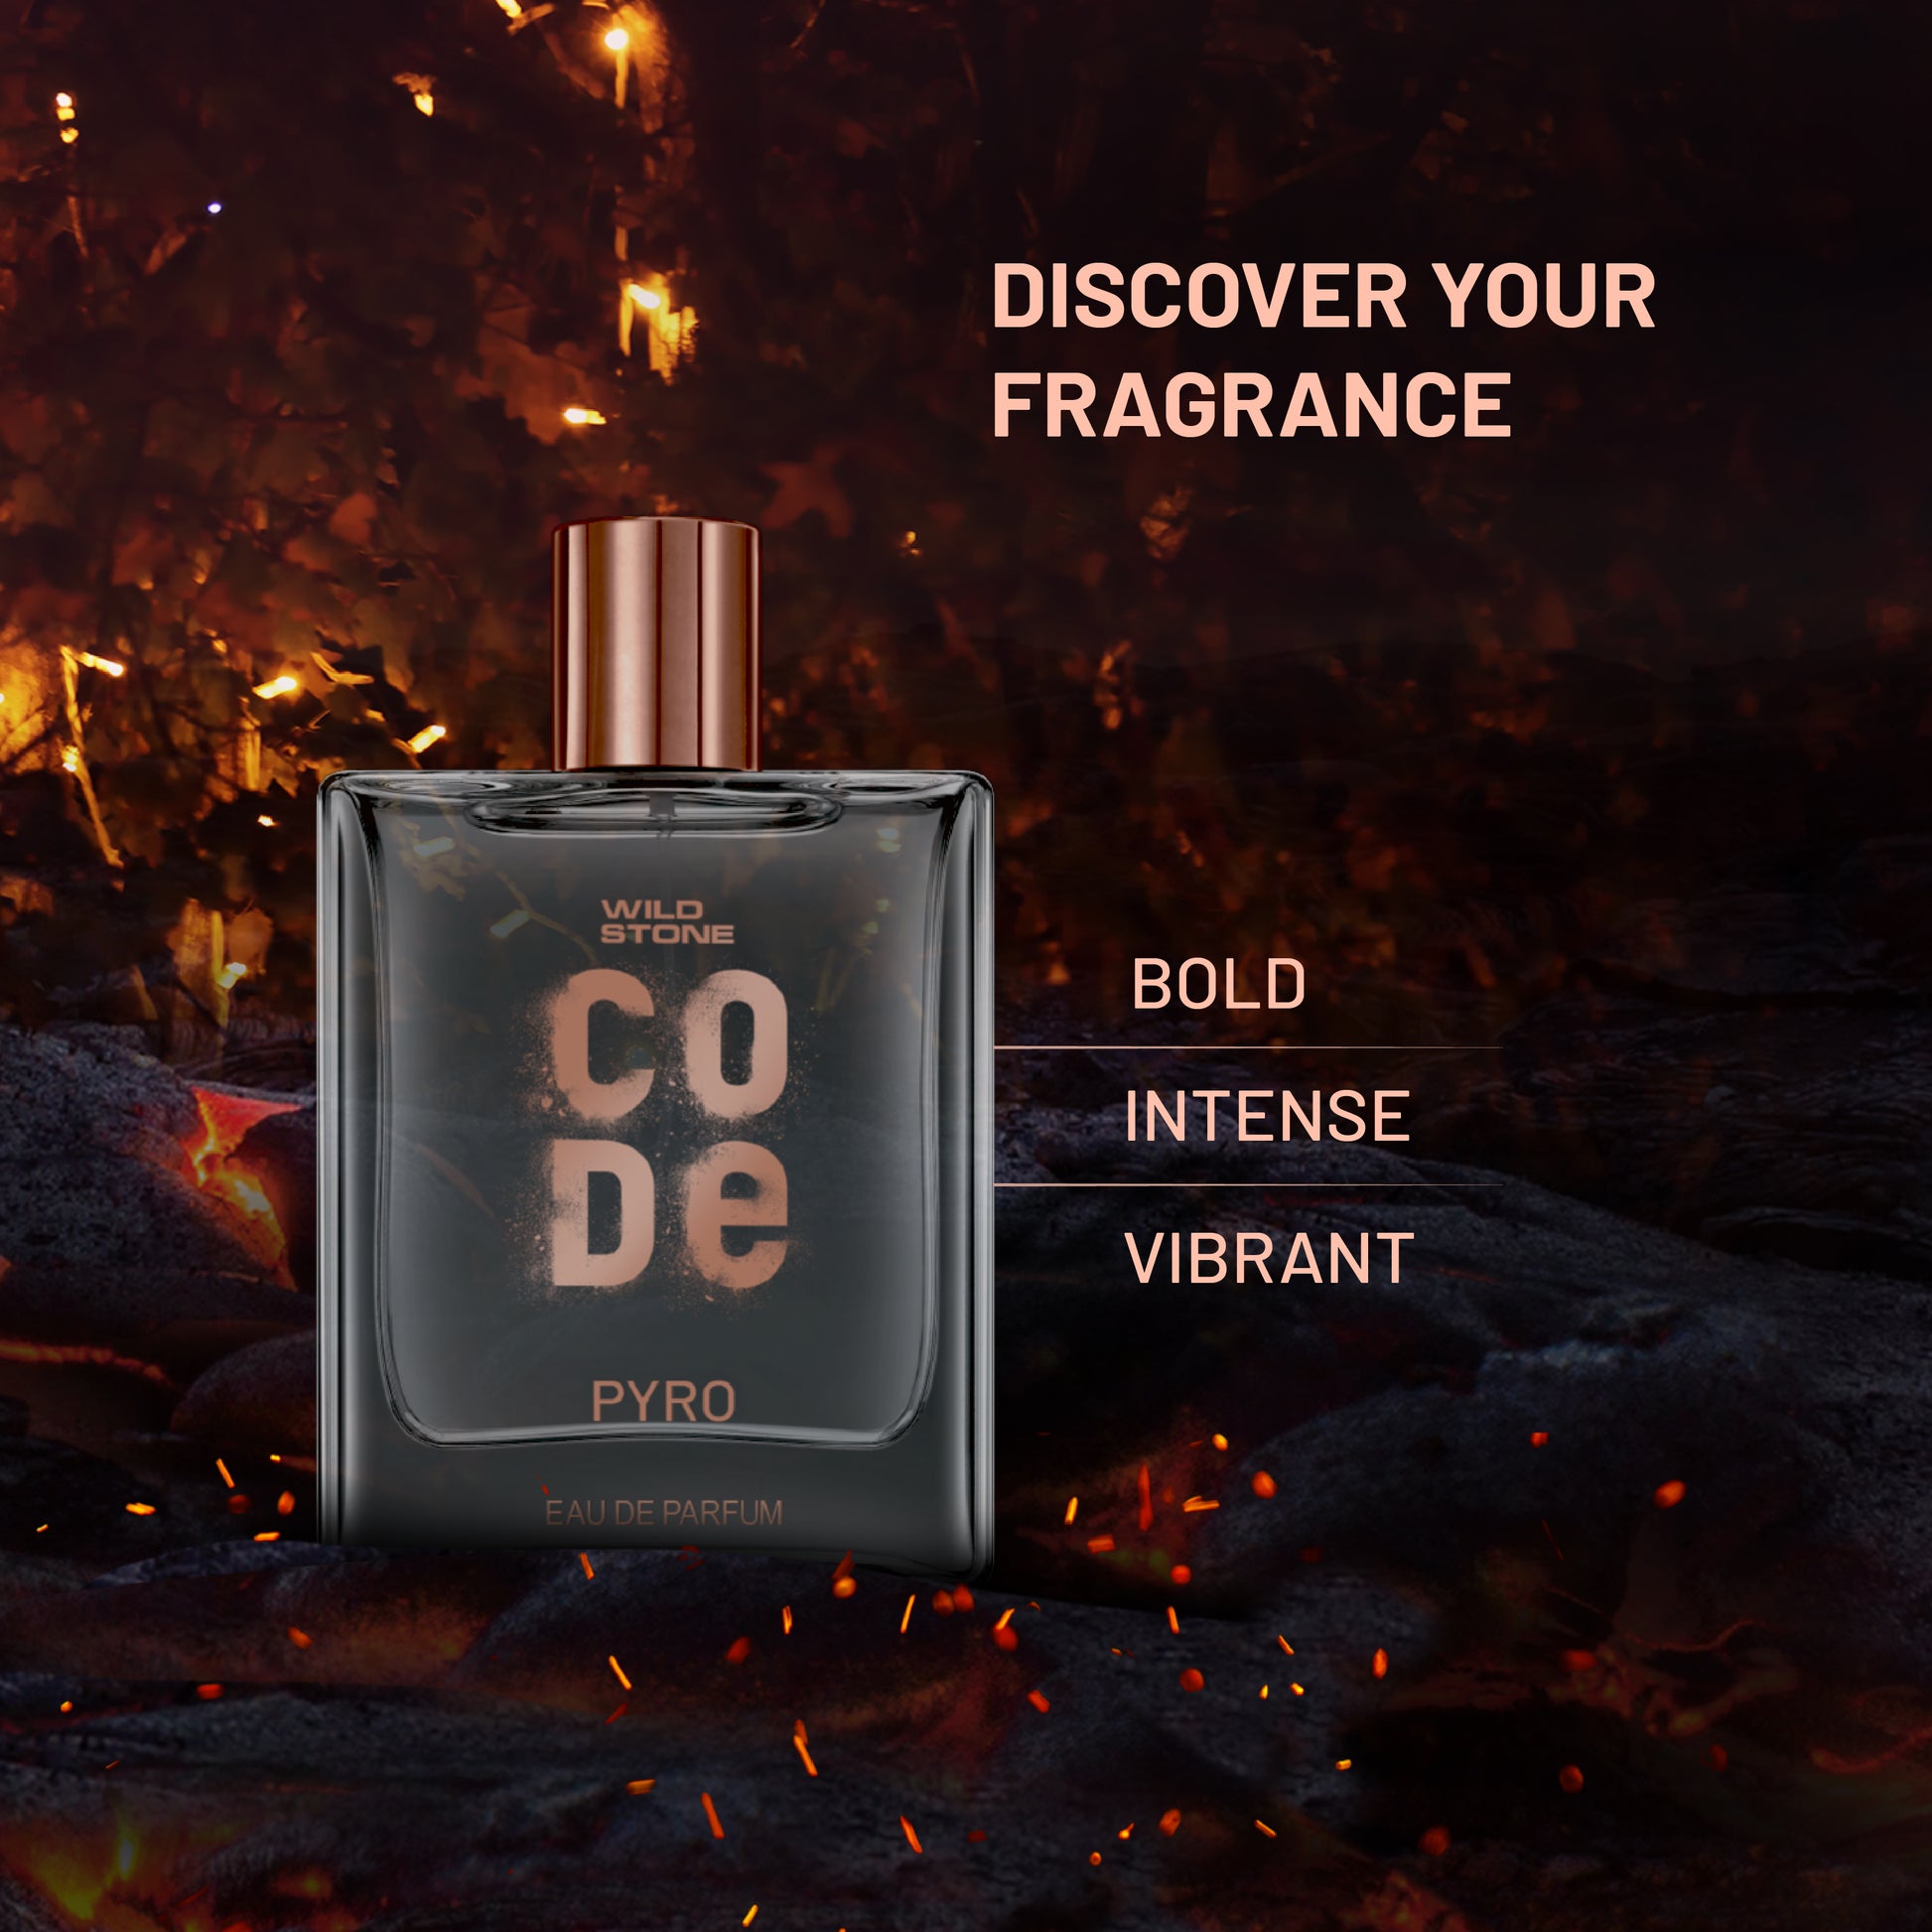 Wild Stone CODE Pyro perfume for men